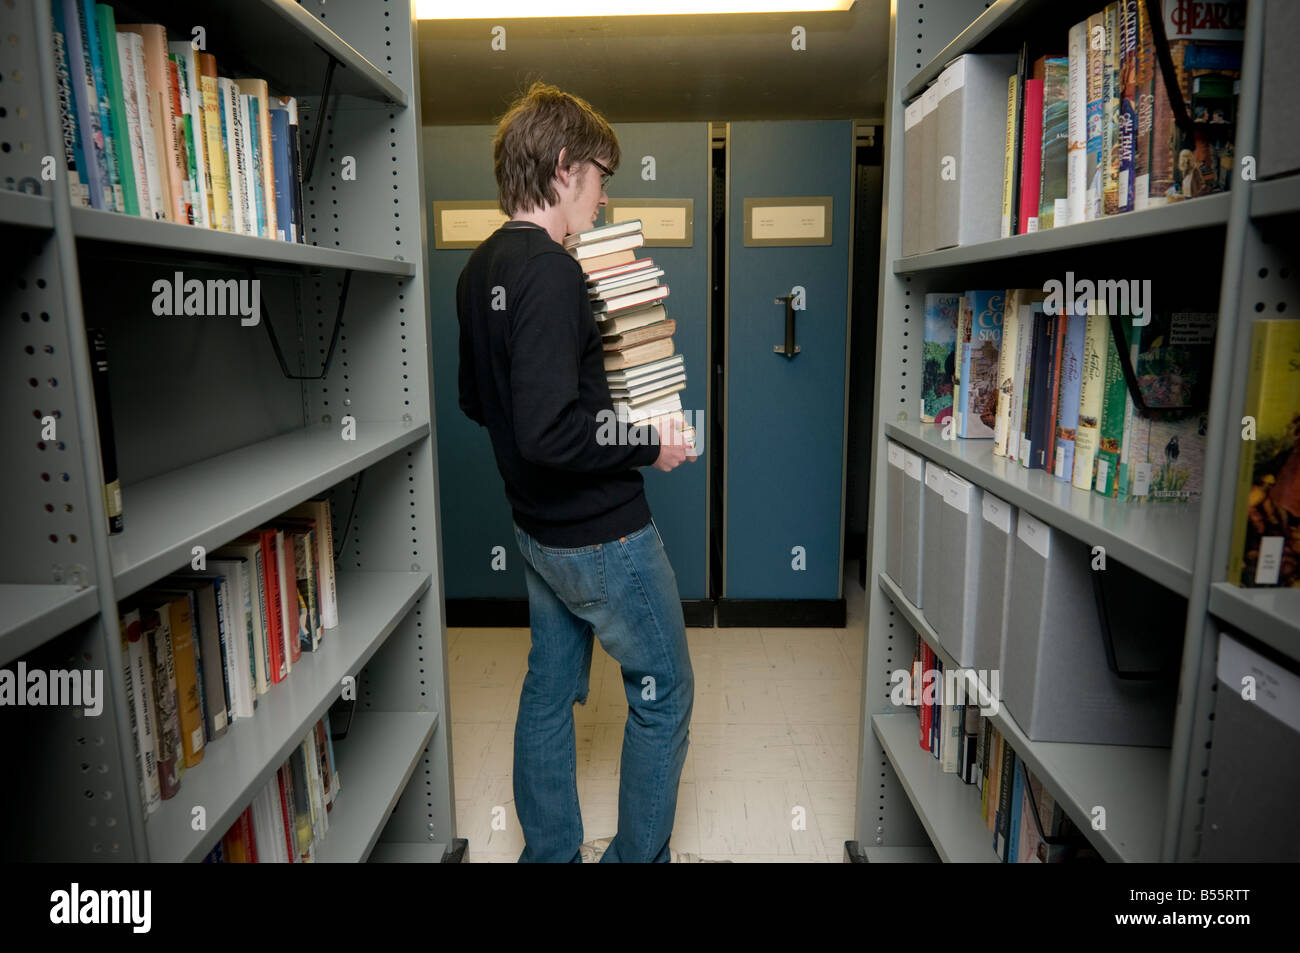 Man sammelt Bücher aus dem Archiv der nationalen Bibliothek von Wales Aberystwyth, nehmen sie gescannt und digitalisiert werden Stockfoto